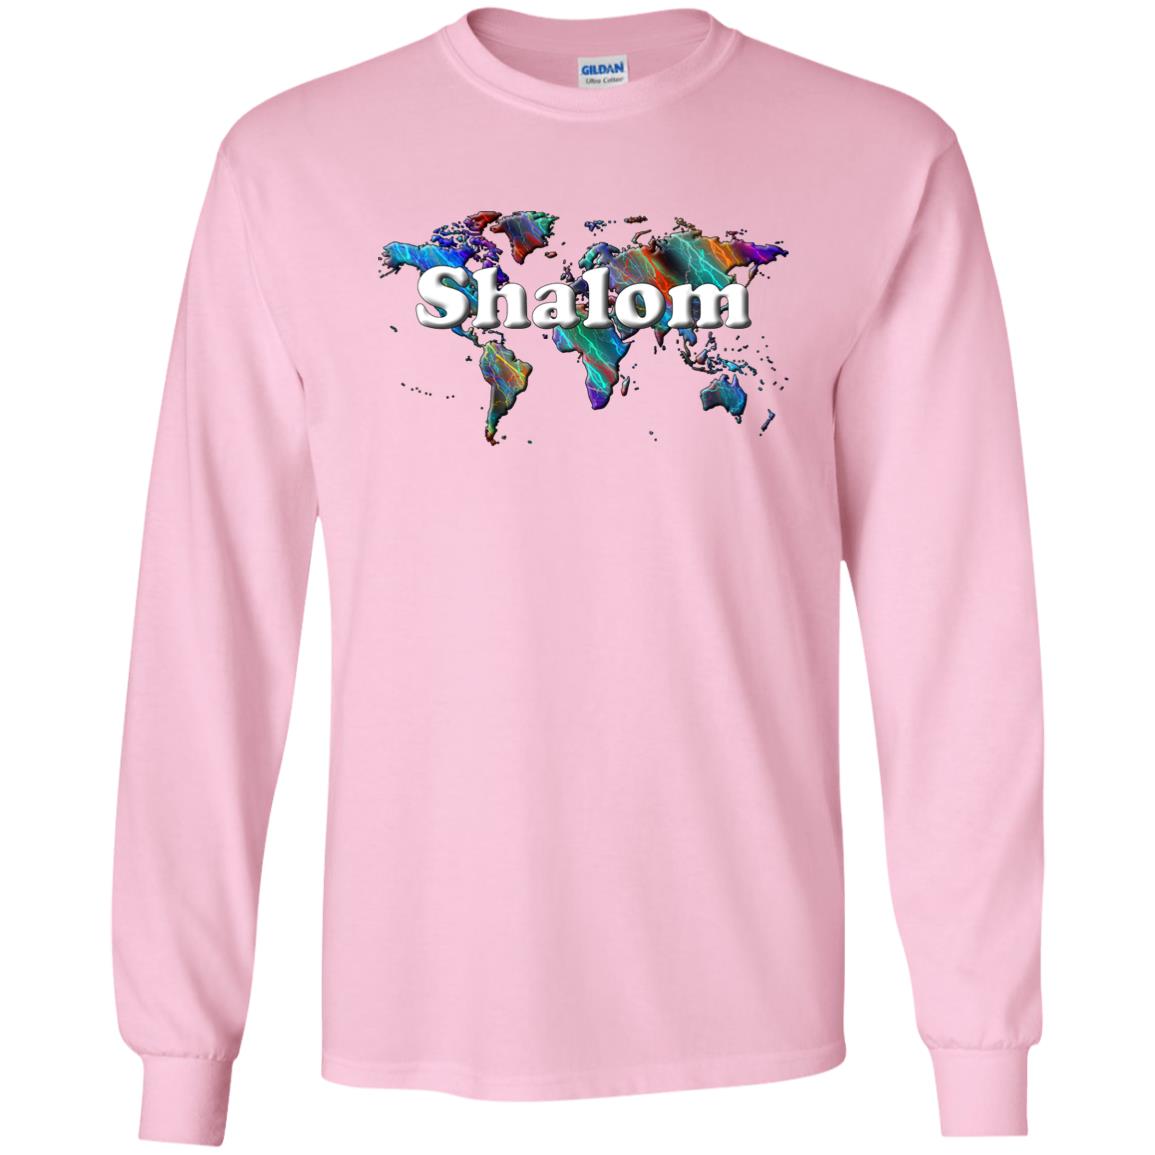 Shalom Long Sleeve T-Shirt